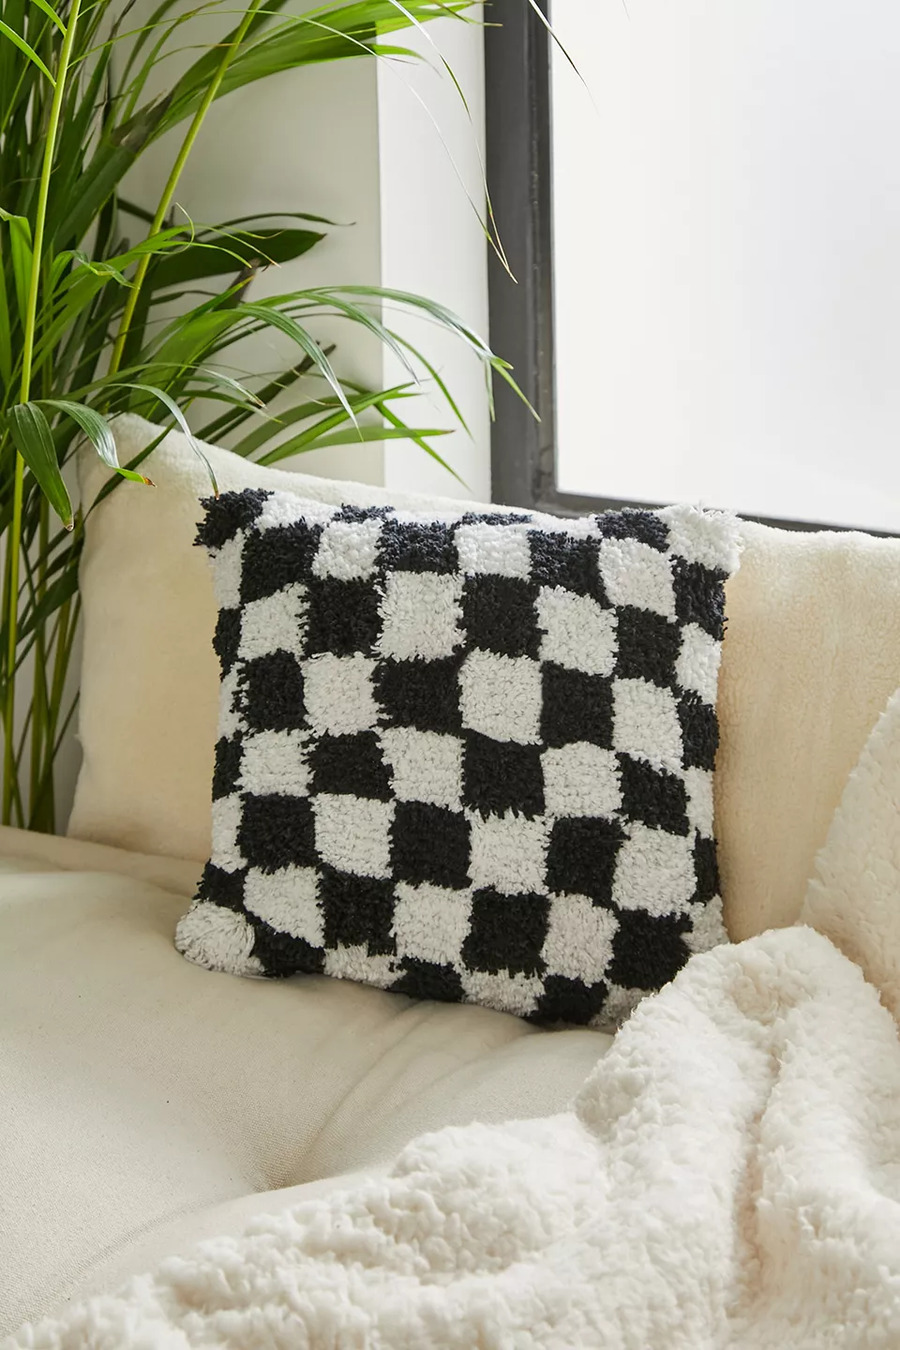 Idea de decoración con cojín de tela peluda, con patrón de ajedrez o damero en blanco y negro, sobre sofá color beige y manta de polar blanca.